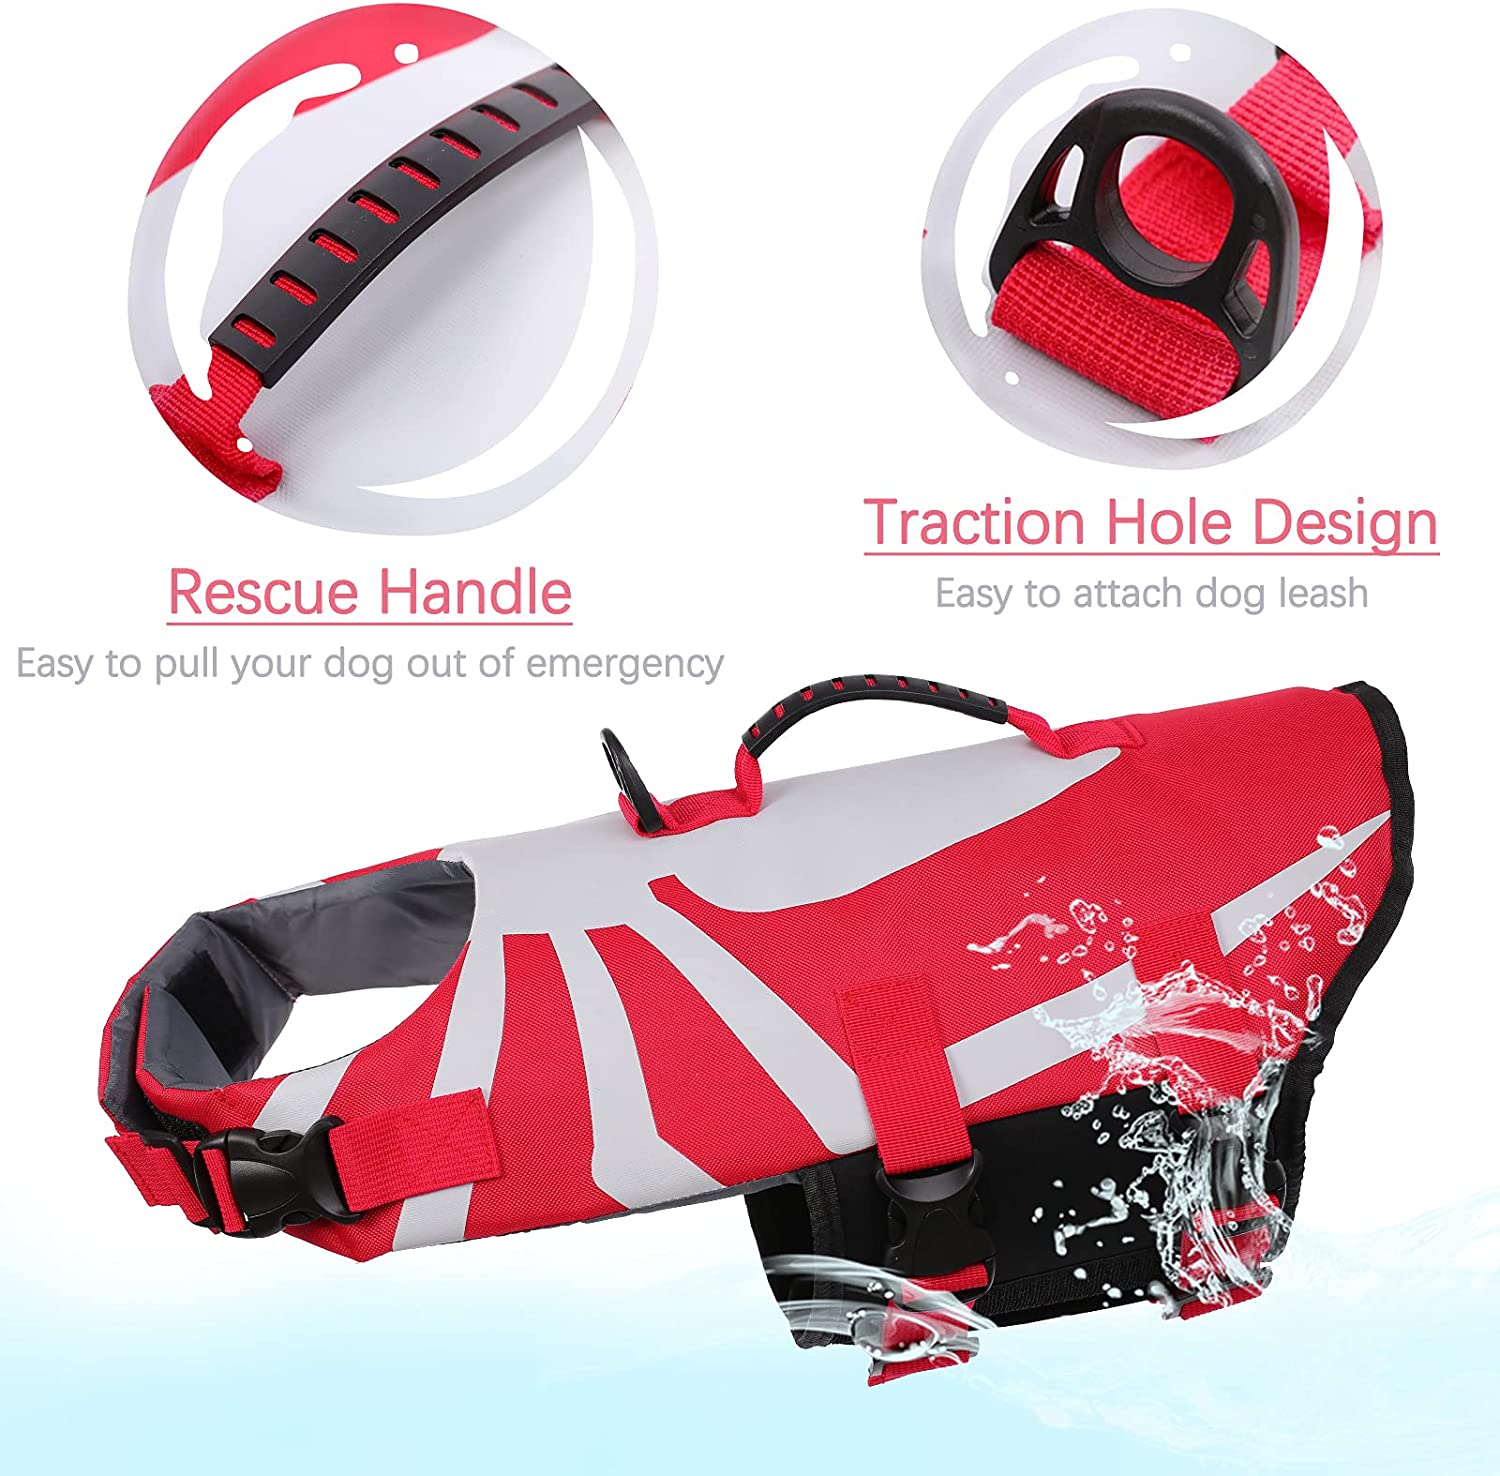  بسته شدن راحت Velcro و سگک های آزاد کننده سریع در اطراف گردن و بدنه شناور نجات به شما این امکان را می دهد که با توجه به اندازه سگ تنظیم شده و برای حداکثر ایمنی محکم نگه دارید